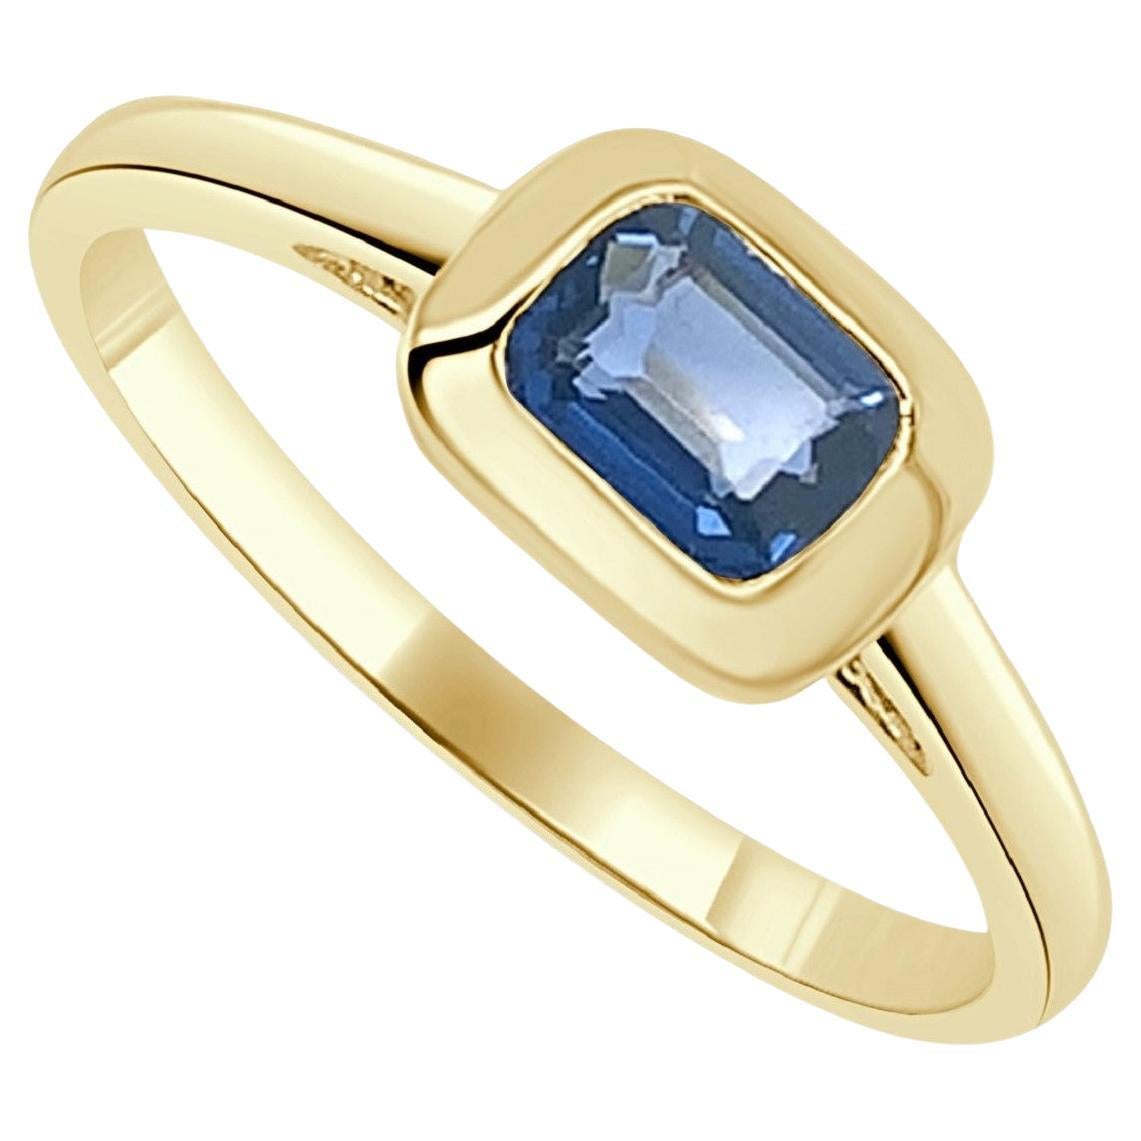 14k Yellow Gold & Emerald-Cut Blue Sapphire Ring 0.65 CTTW